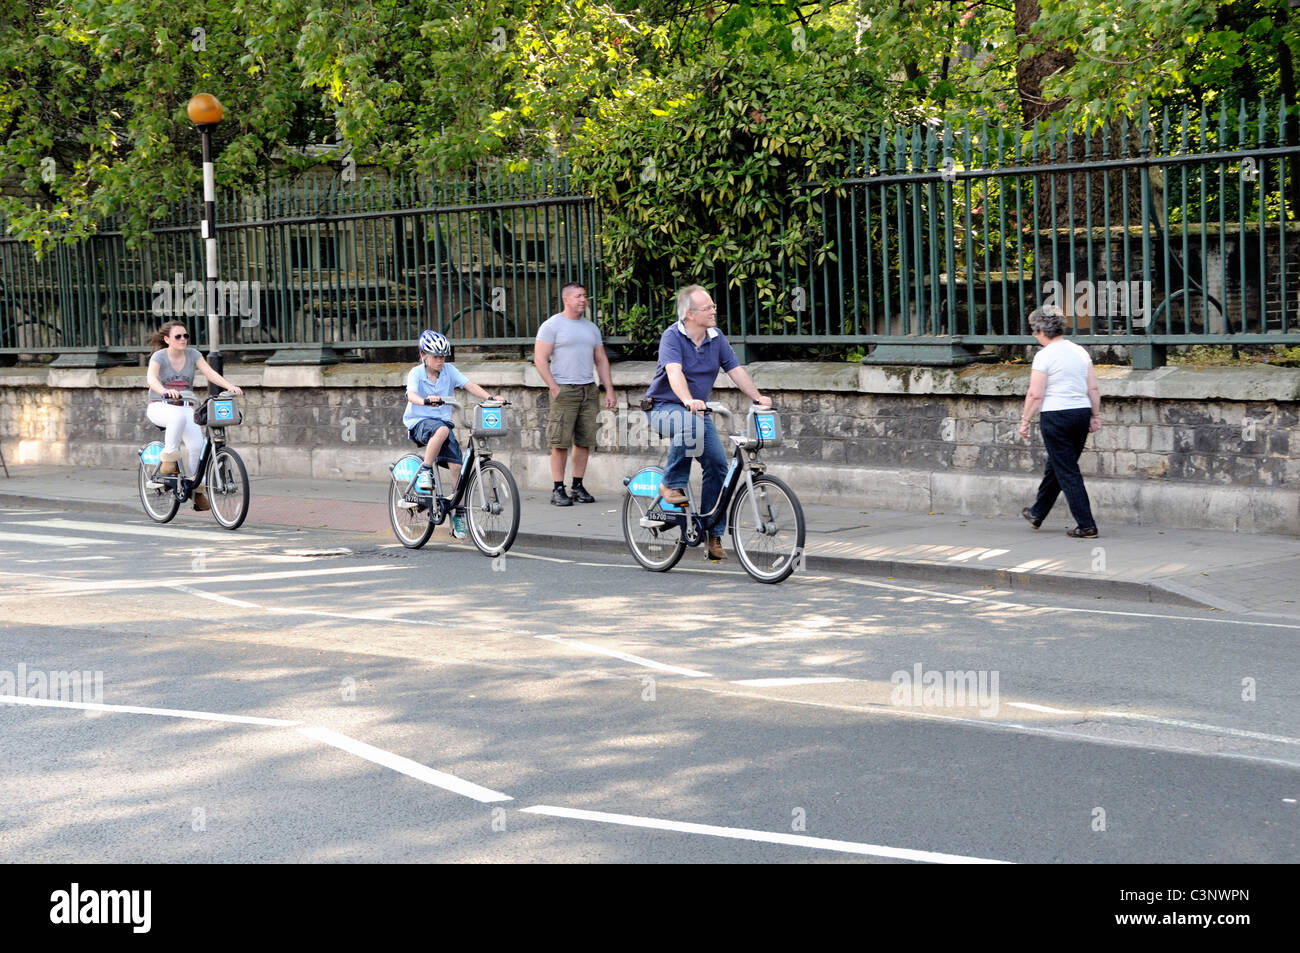 Famille à vélo sur des vélos Barclays, City Road Islington Londres Angleterre Royaume-uni Banque D'Images